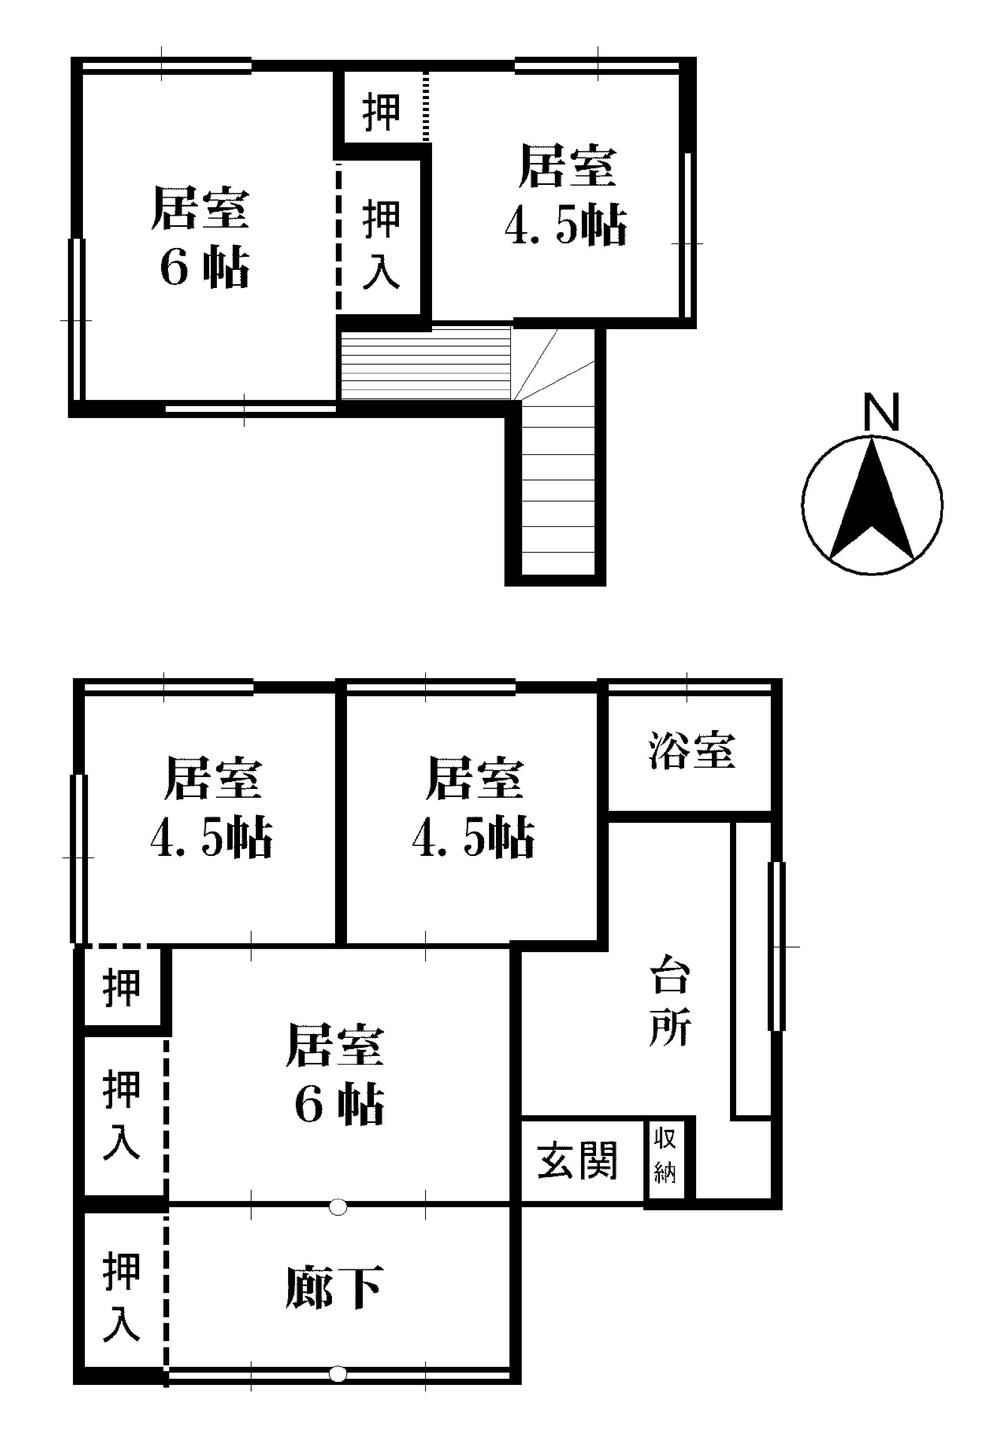 Floor plan. 6 million yen, 5K, Land area 71.53 sq m , Building area 72.8 sq m